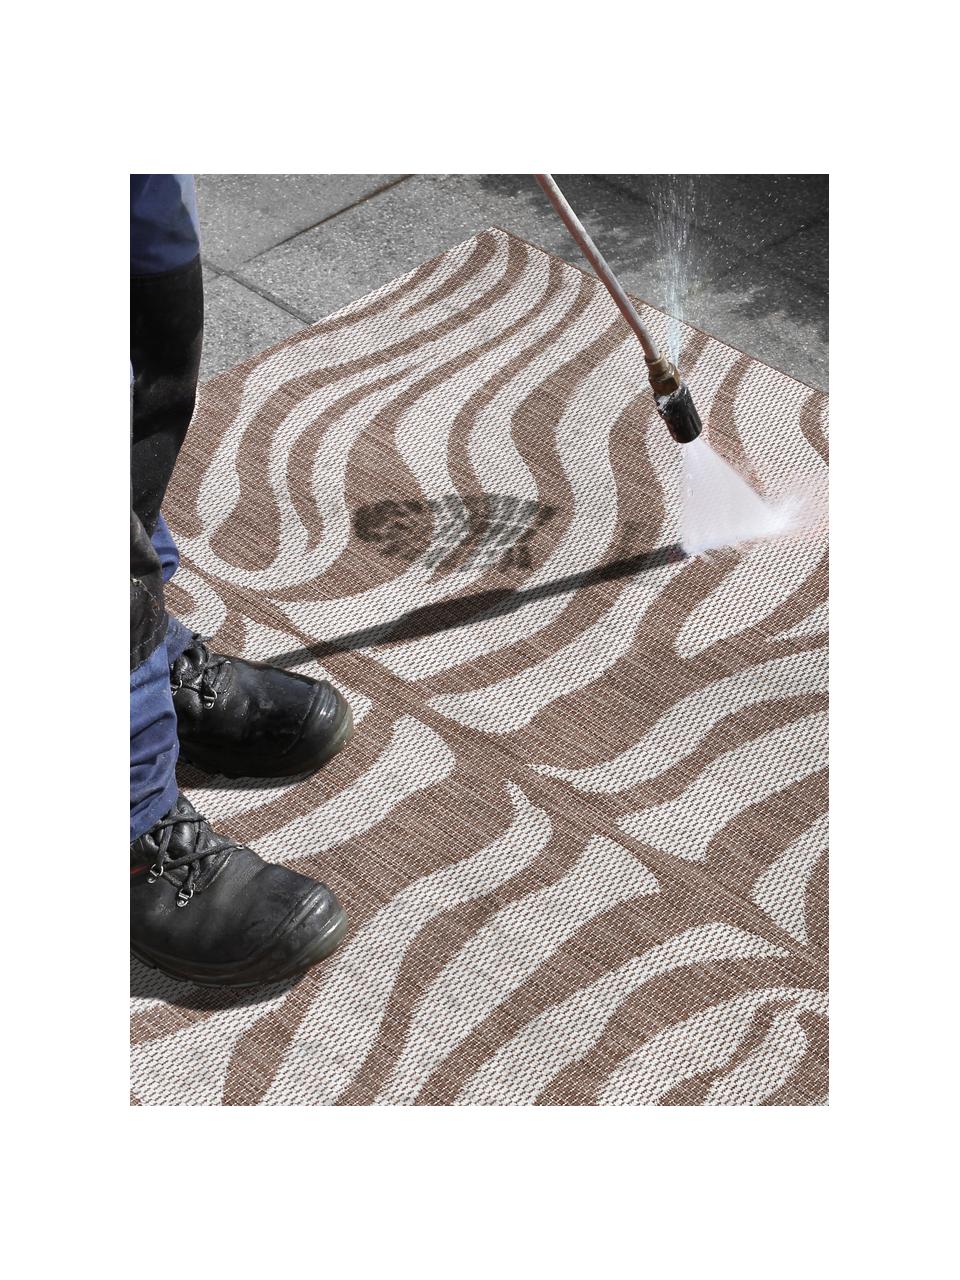 In- & Outdoor-Teppich Avin mit Zebramuster, 100% Polypropylen, Hellbraun, Cremeweiß, B 120 x L 170 cm (Größe S)